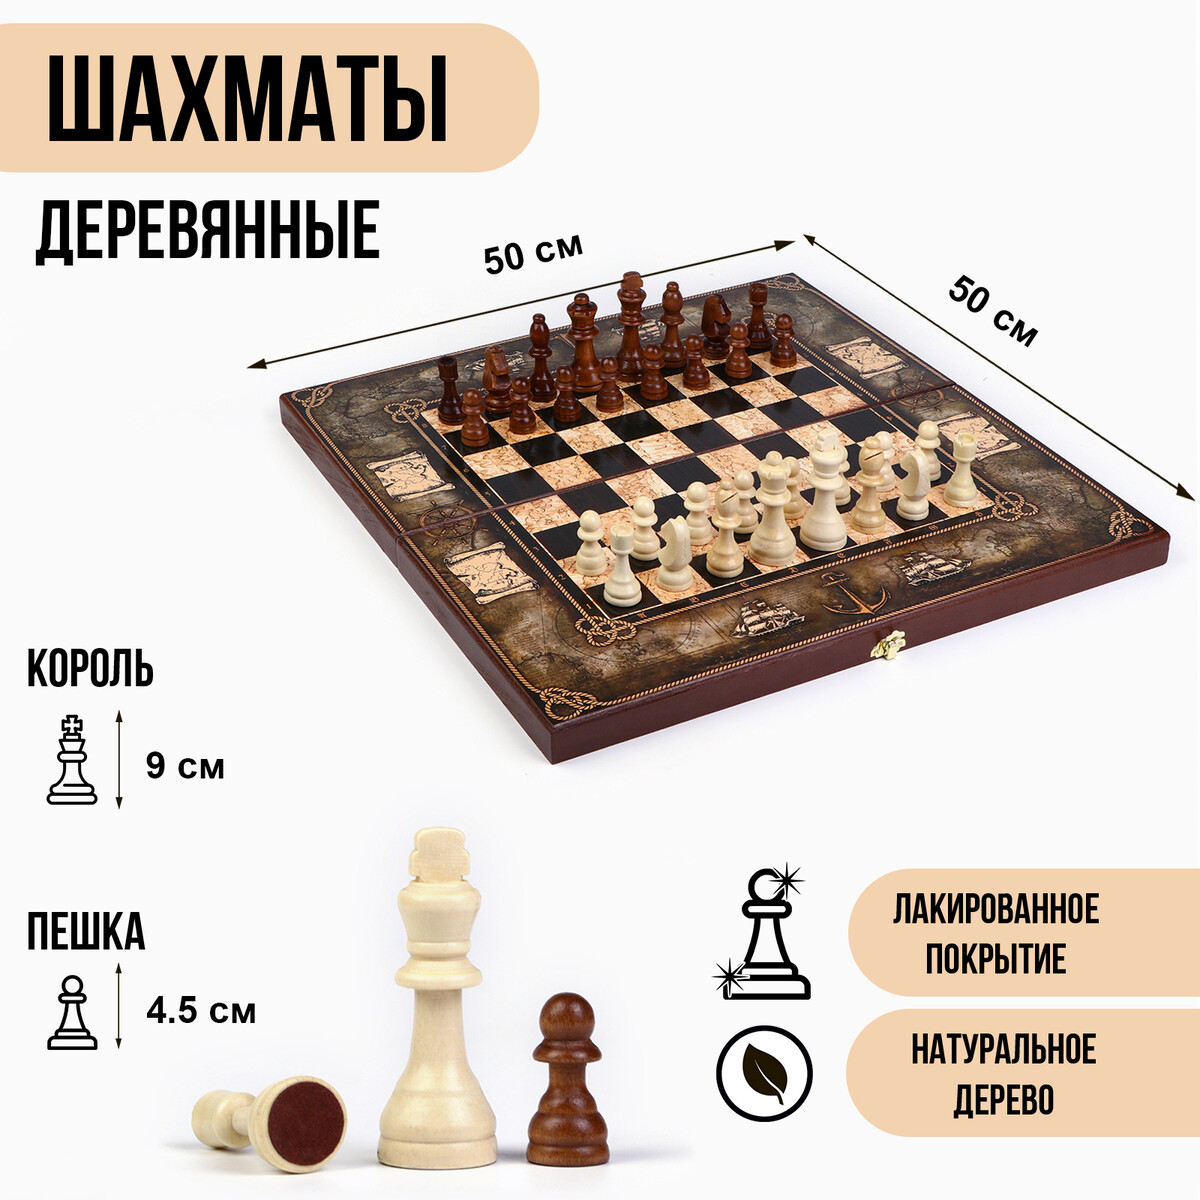 Шахматы деревянные 50х50 см шахматы деревянные гроссмейстерские турнирные 43 х 43 см король h 9 см пешка h 4 см